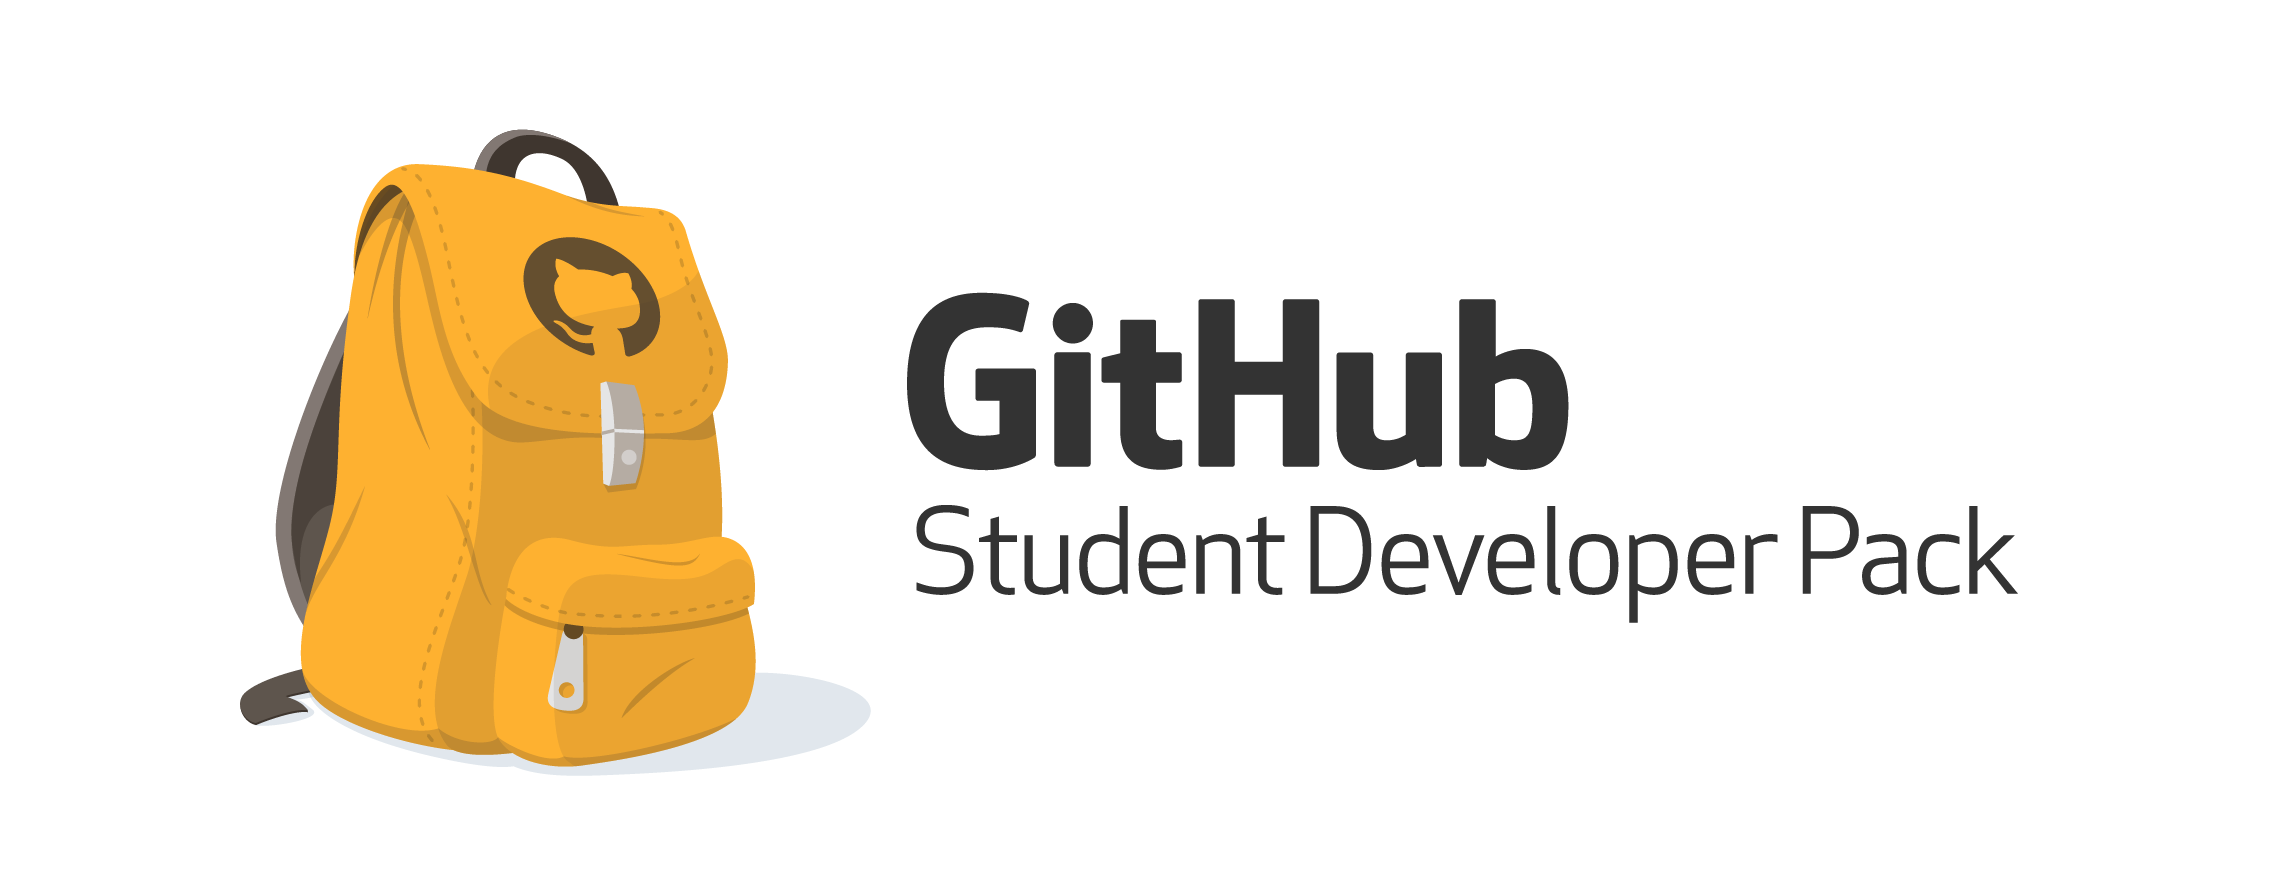 关于 GitHub 学生包的申请问题